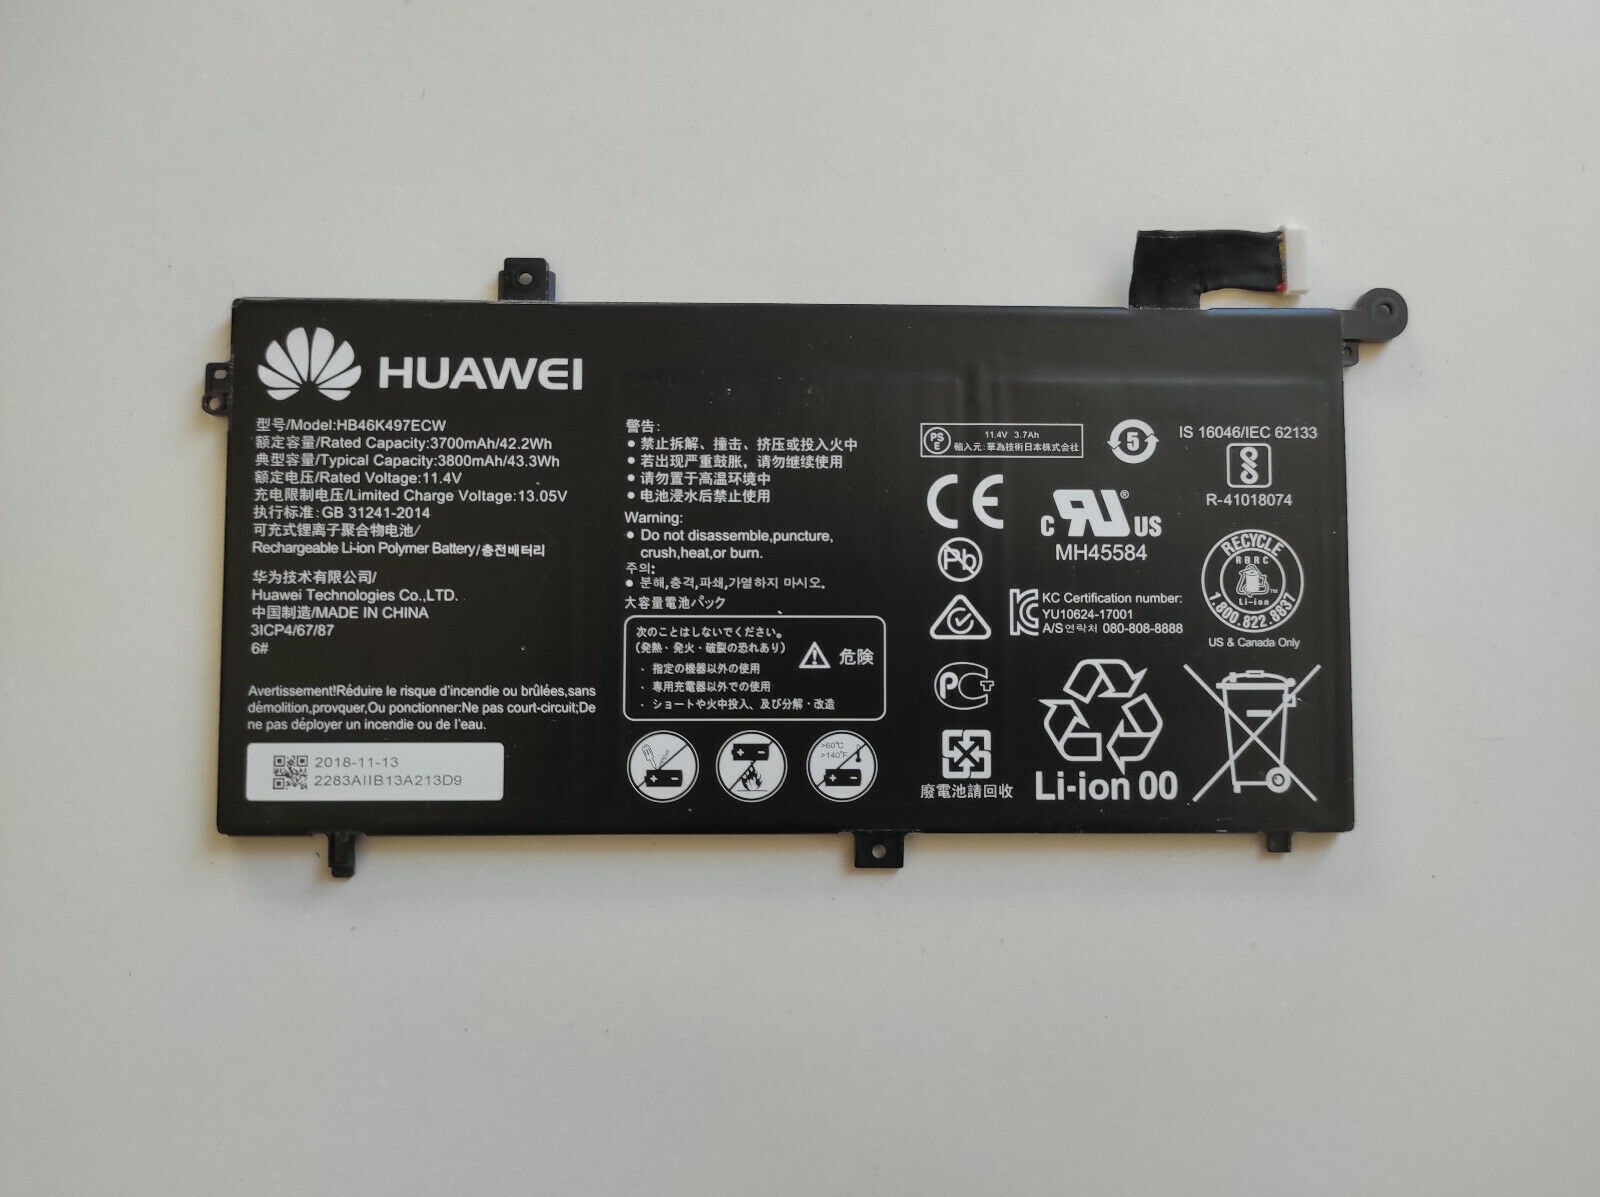 Akku Huawei HB46K497ECW 11.4V 42.2Wh 3700mAH